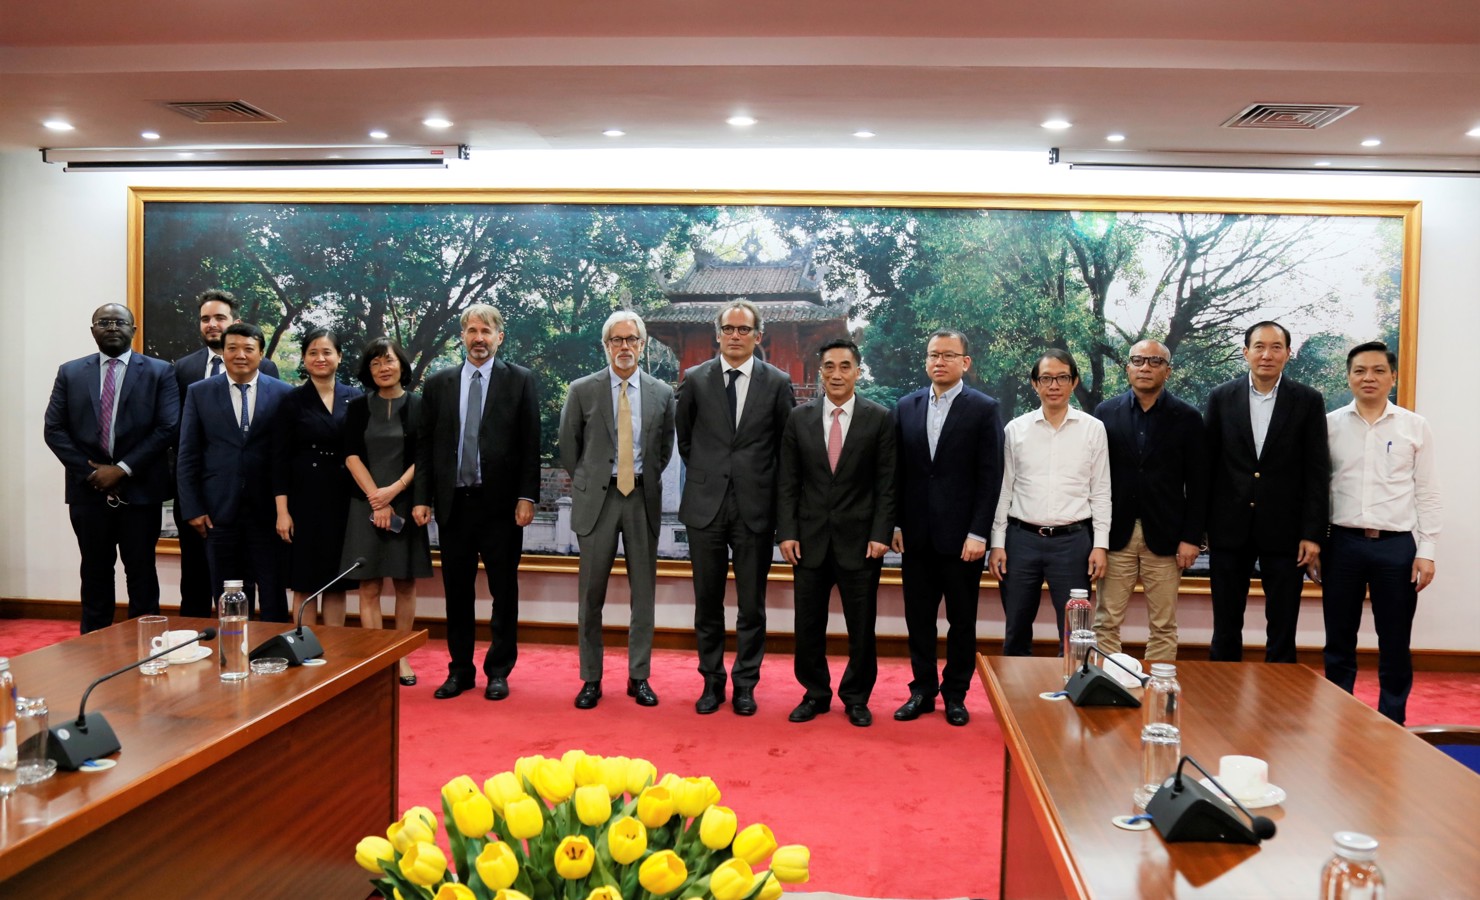 Thứ trưởng Trần Xuân Hà, Phó Chủ tịch IFC Alfonso Garcia Mora cùng các đại biểu dự cuộc làm việc.